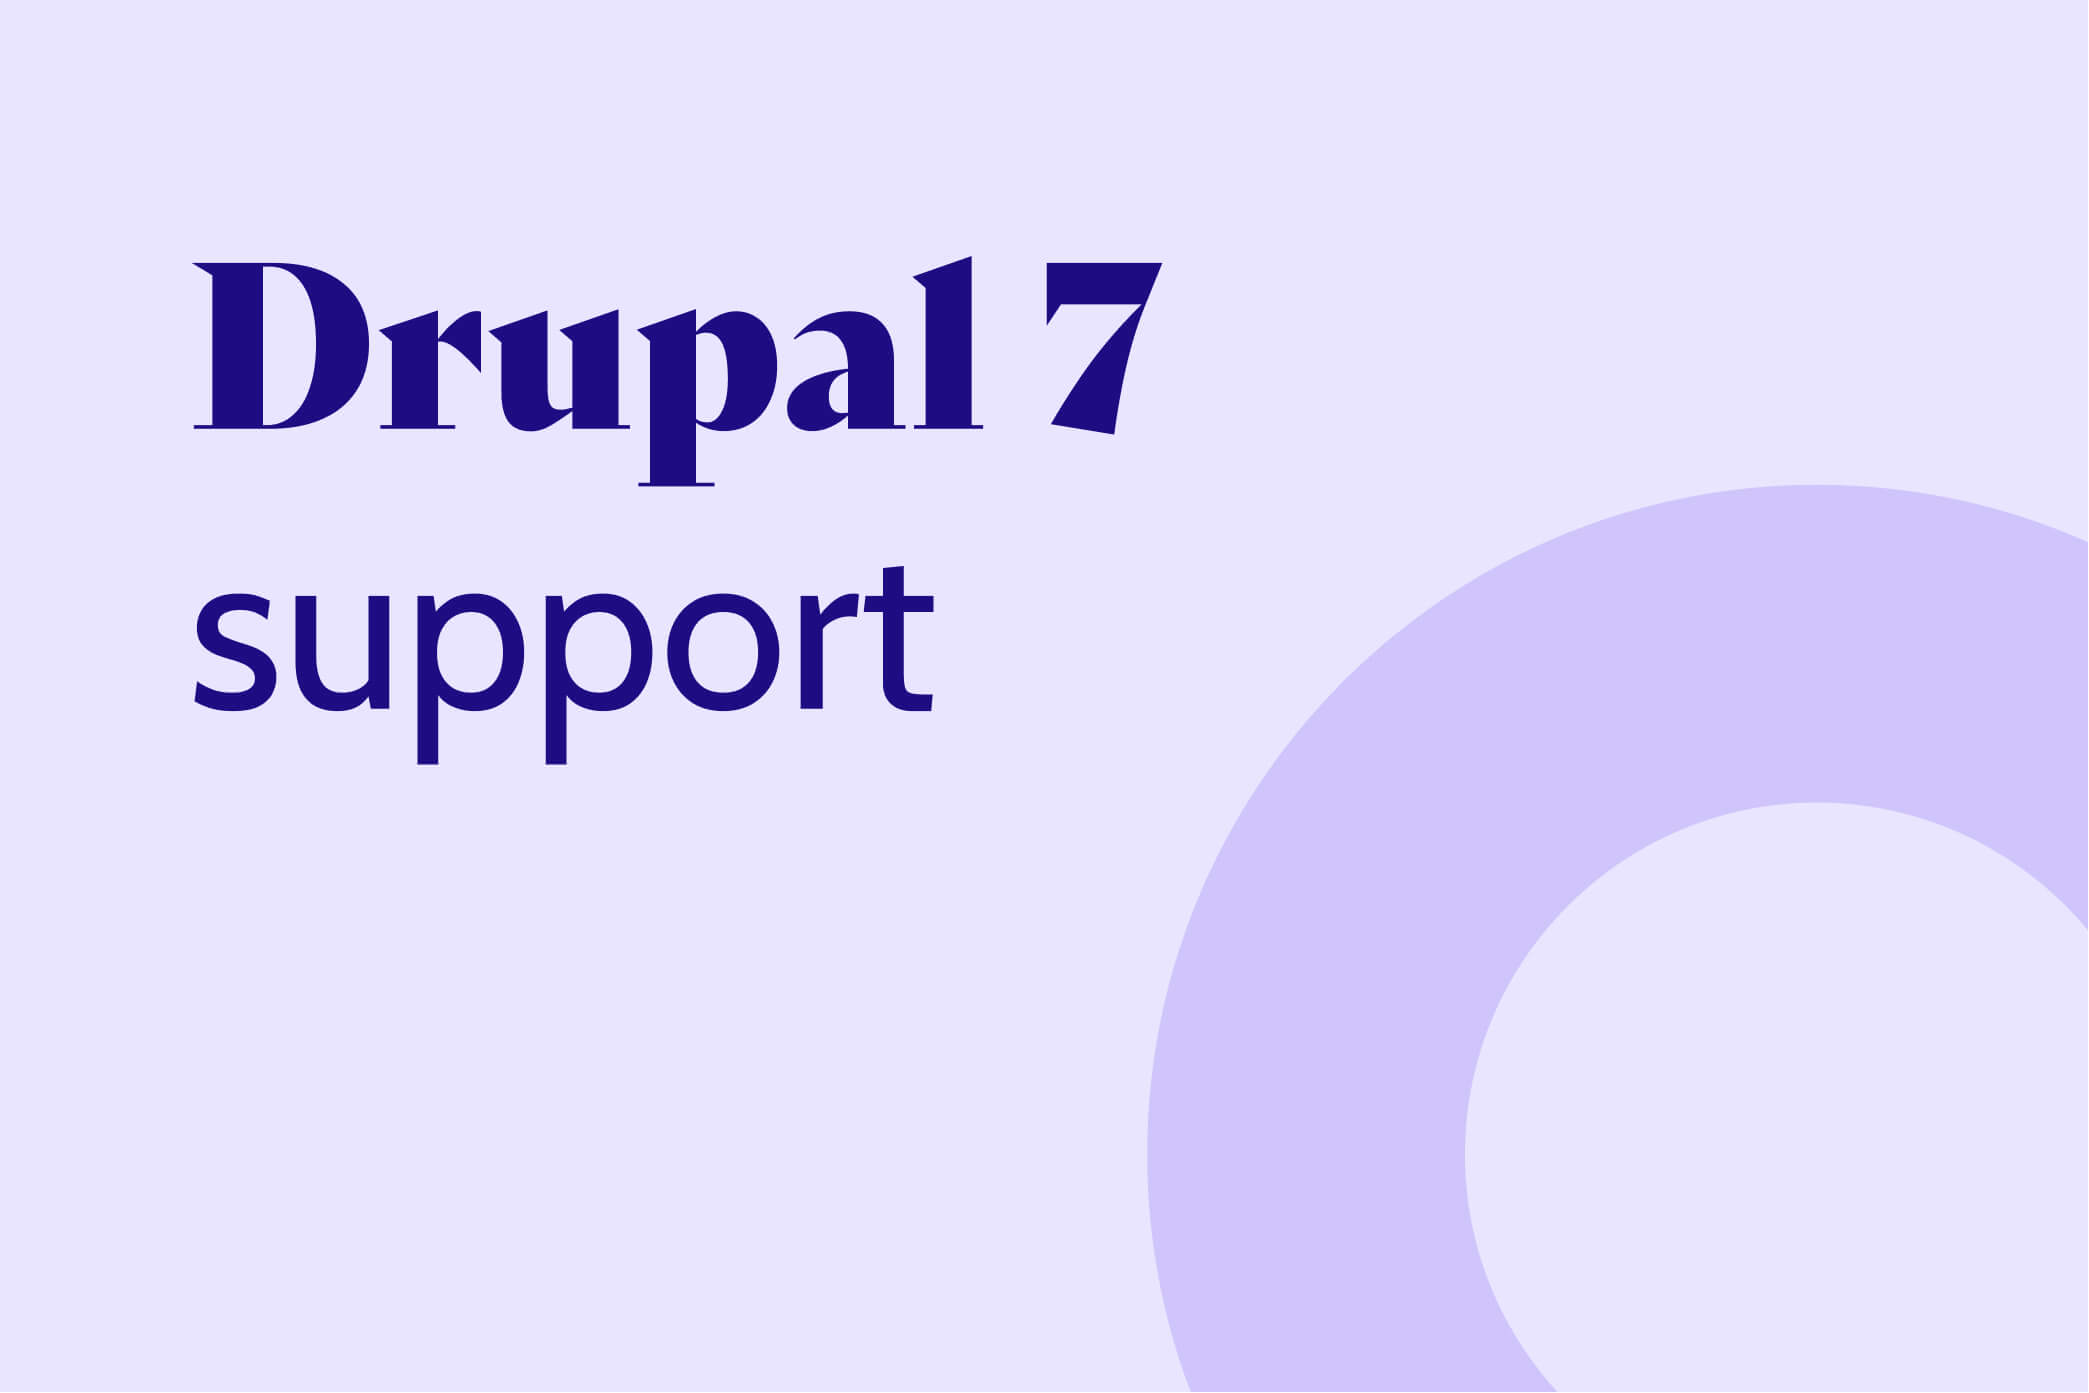 Drupal 7 support